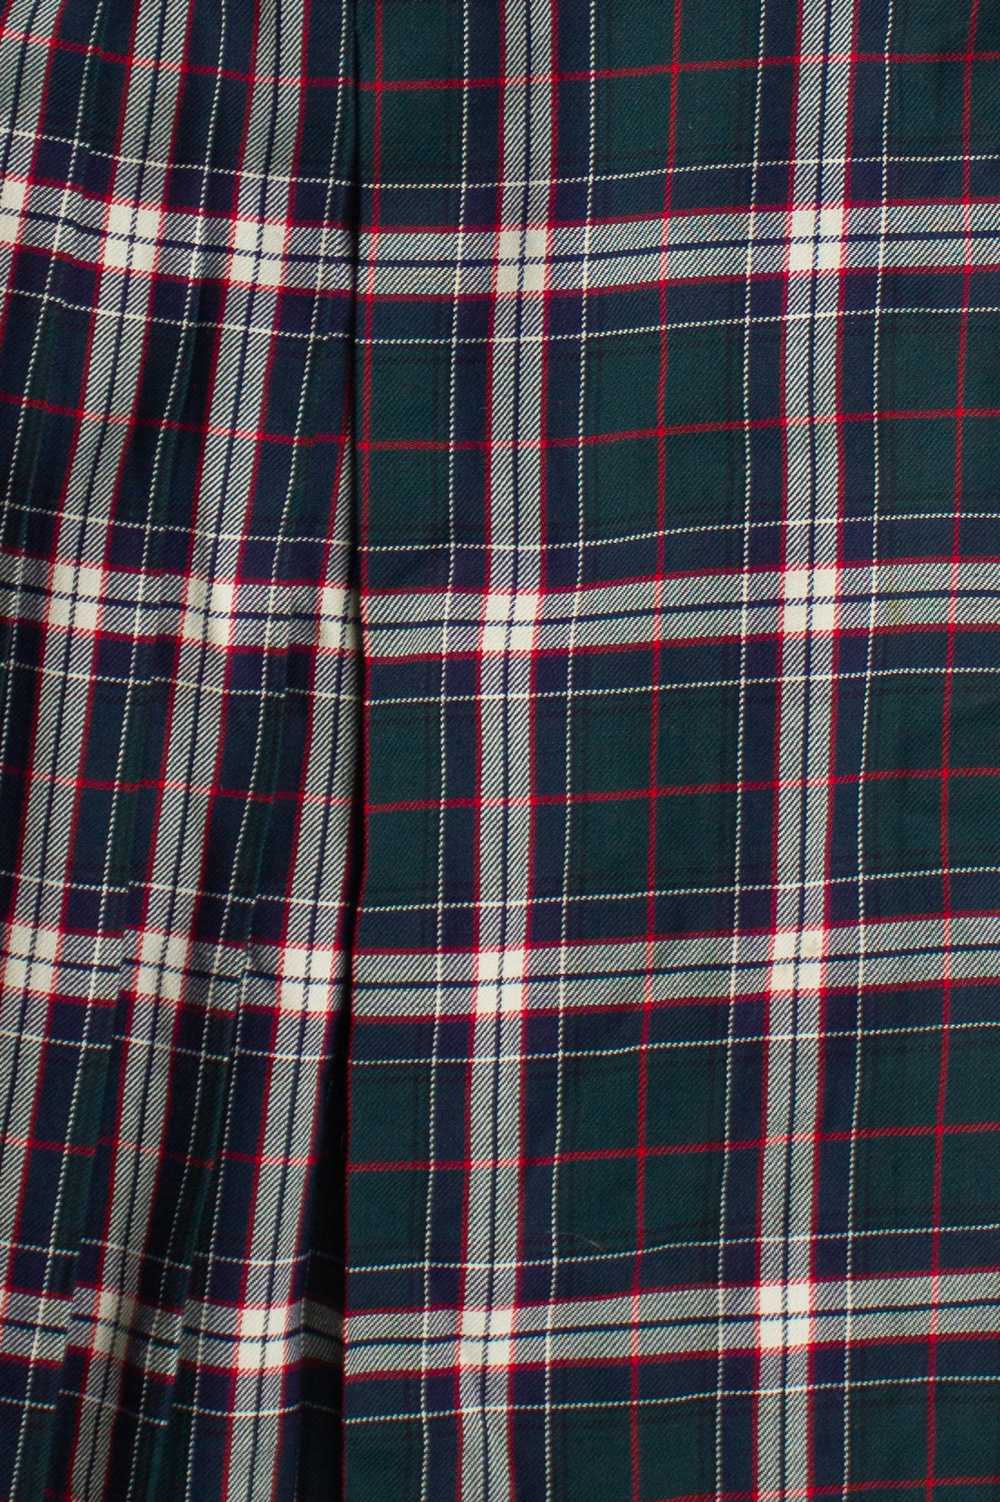 Vintage Plaid Wool Maxi Skirt (80s) 690 - image 2